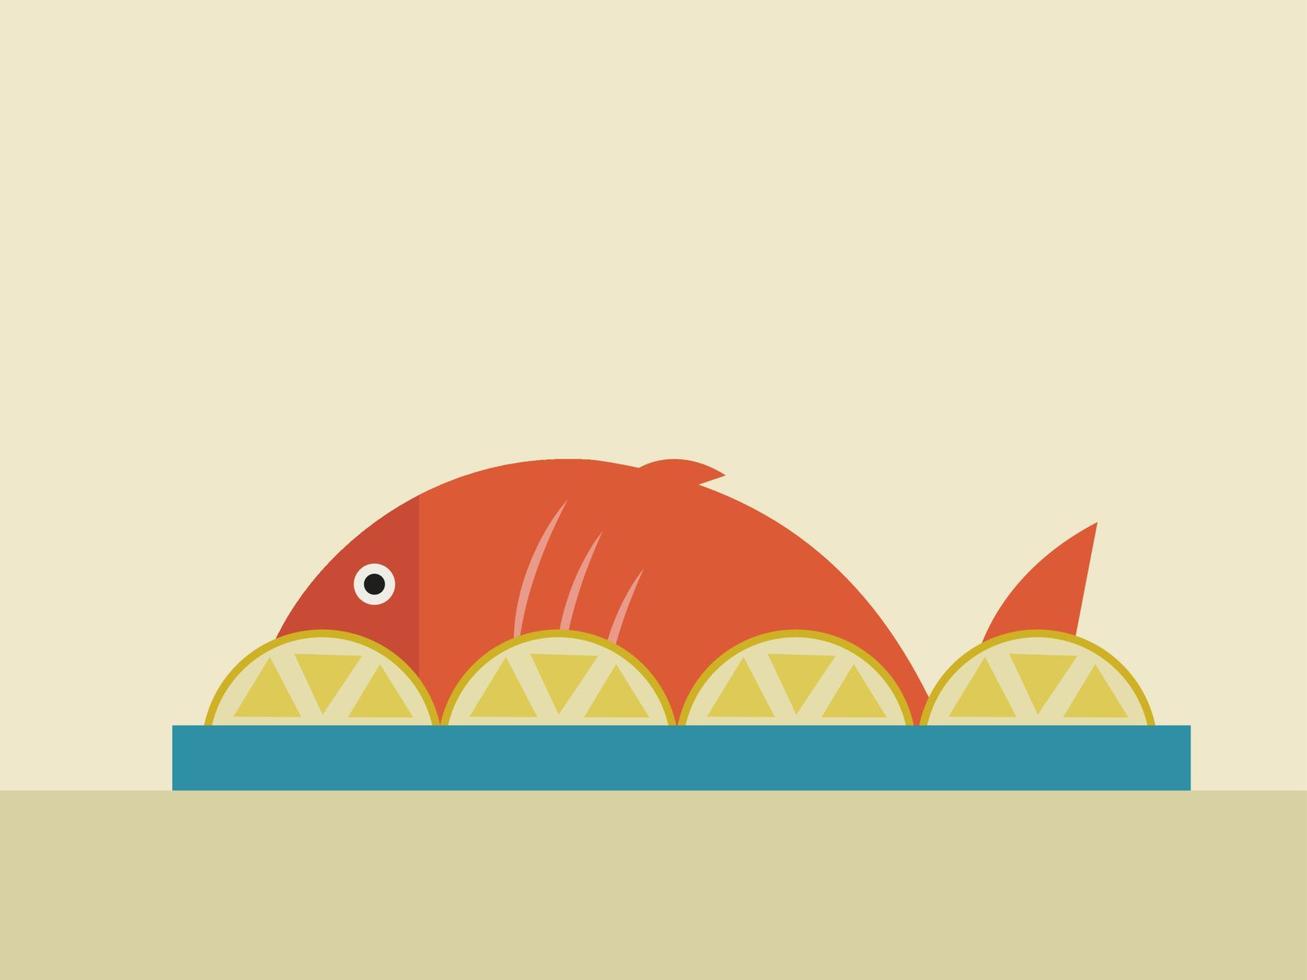 Fisch mit Zitronen, Illustration, Vektor auf weißem Hintergrund.